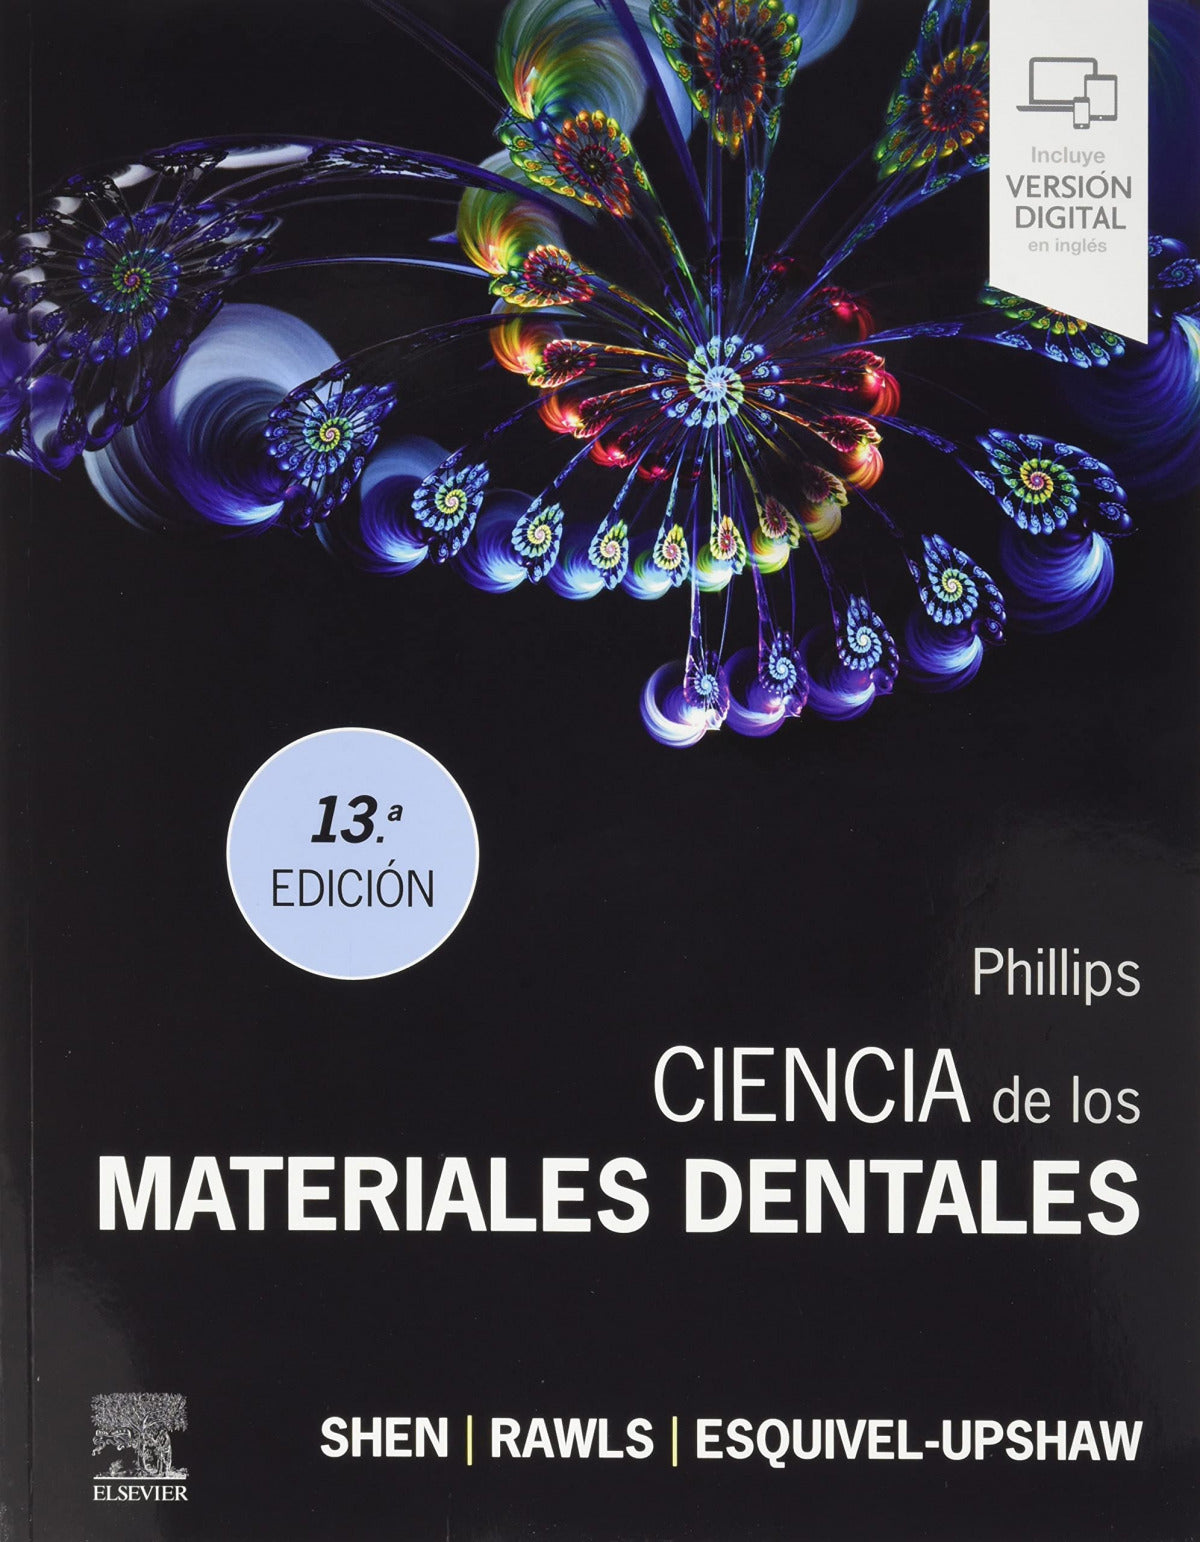 PHILLIPS Ciencia de los Materiales Dentales